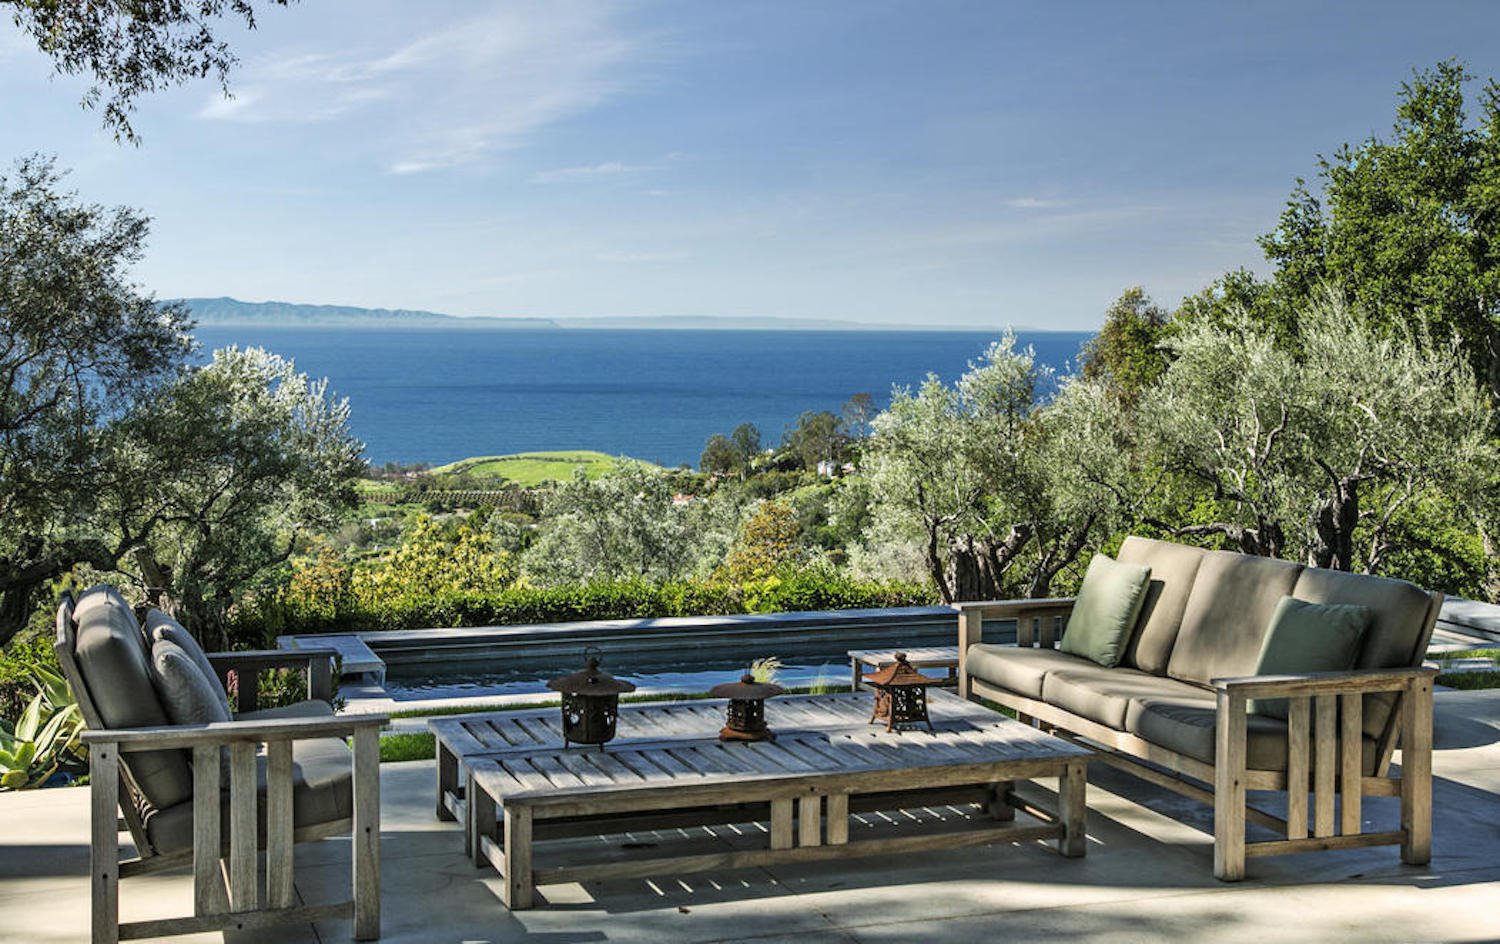 Casa de la actriz Natalie Portman en Montecito terraza